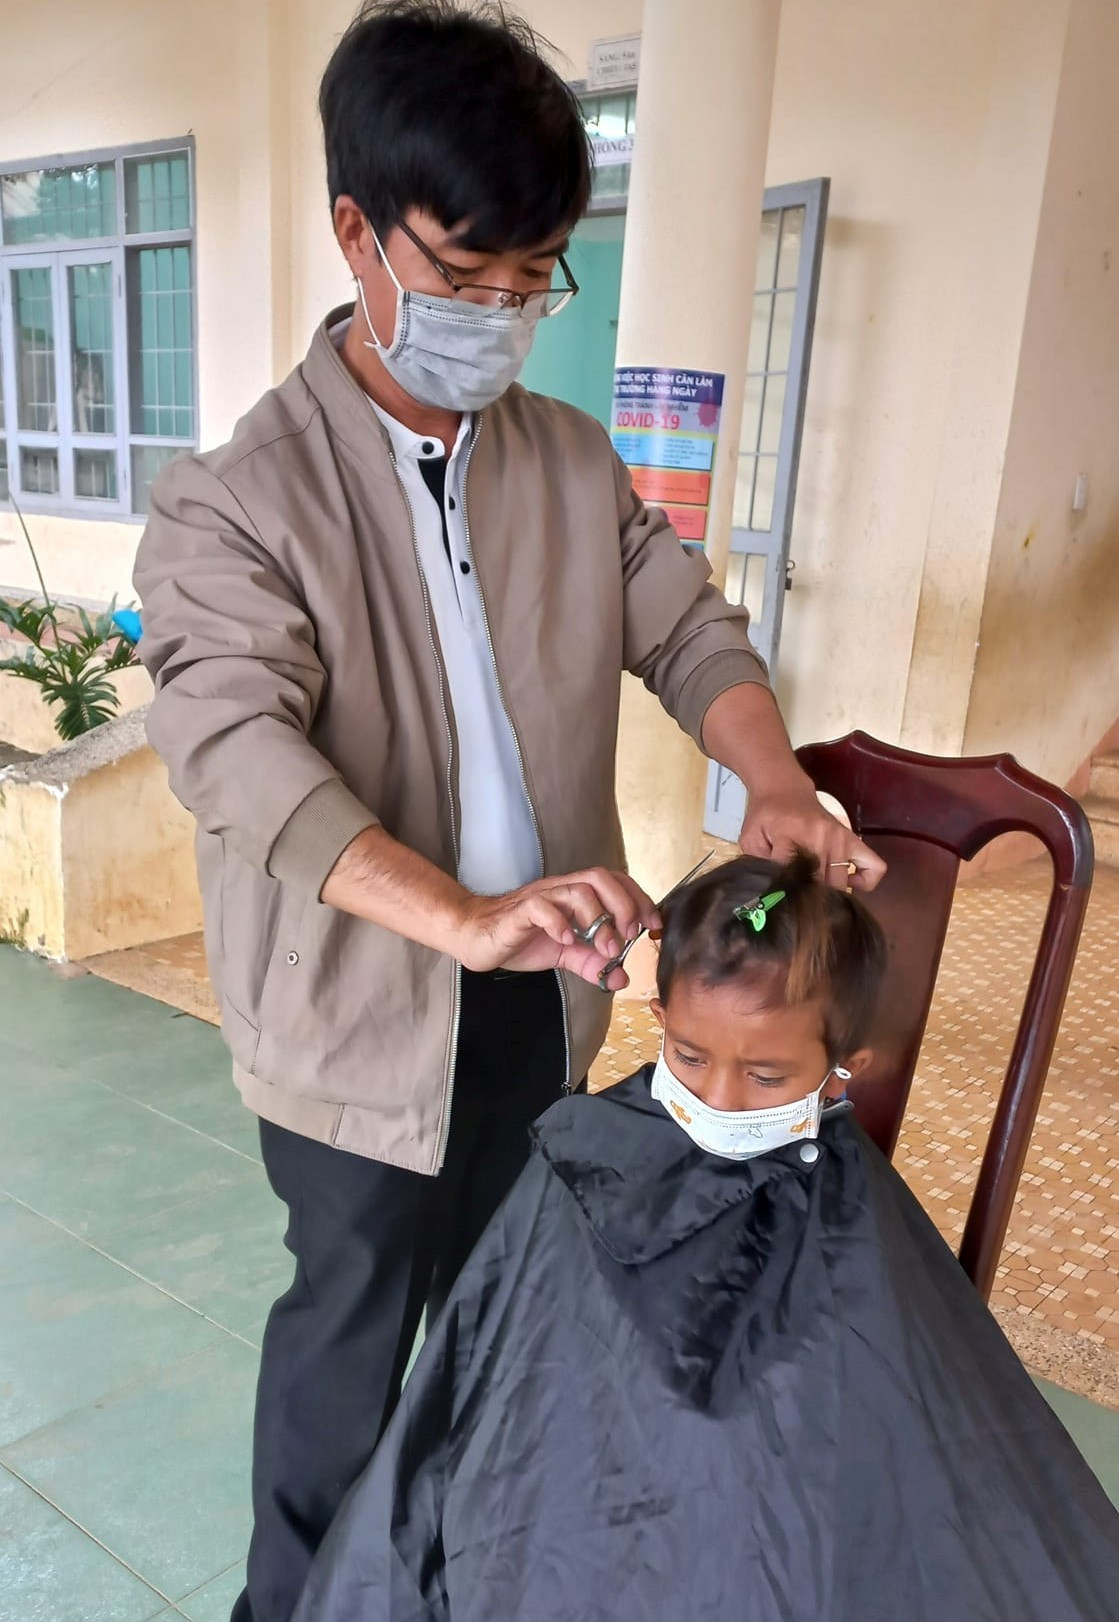 ‘Mưa lời khen’ tặng thầy hiệu trưởng cắt tóc cho học sinh ‘sang- xịn- mịn’ như thợ chuyên nghiệp